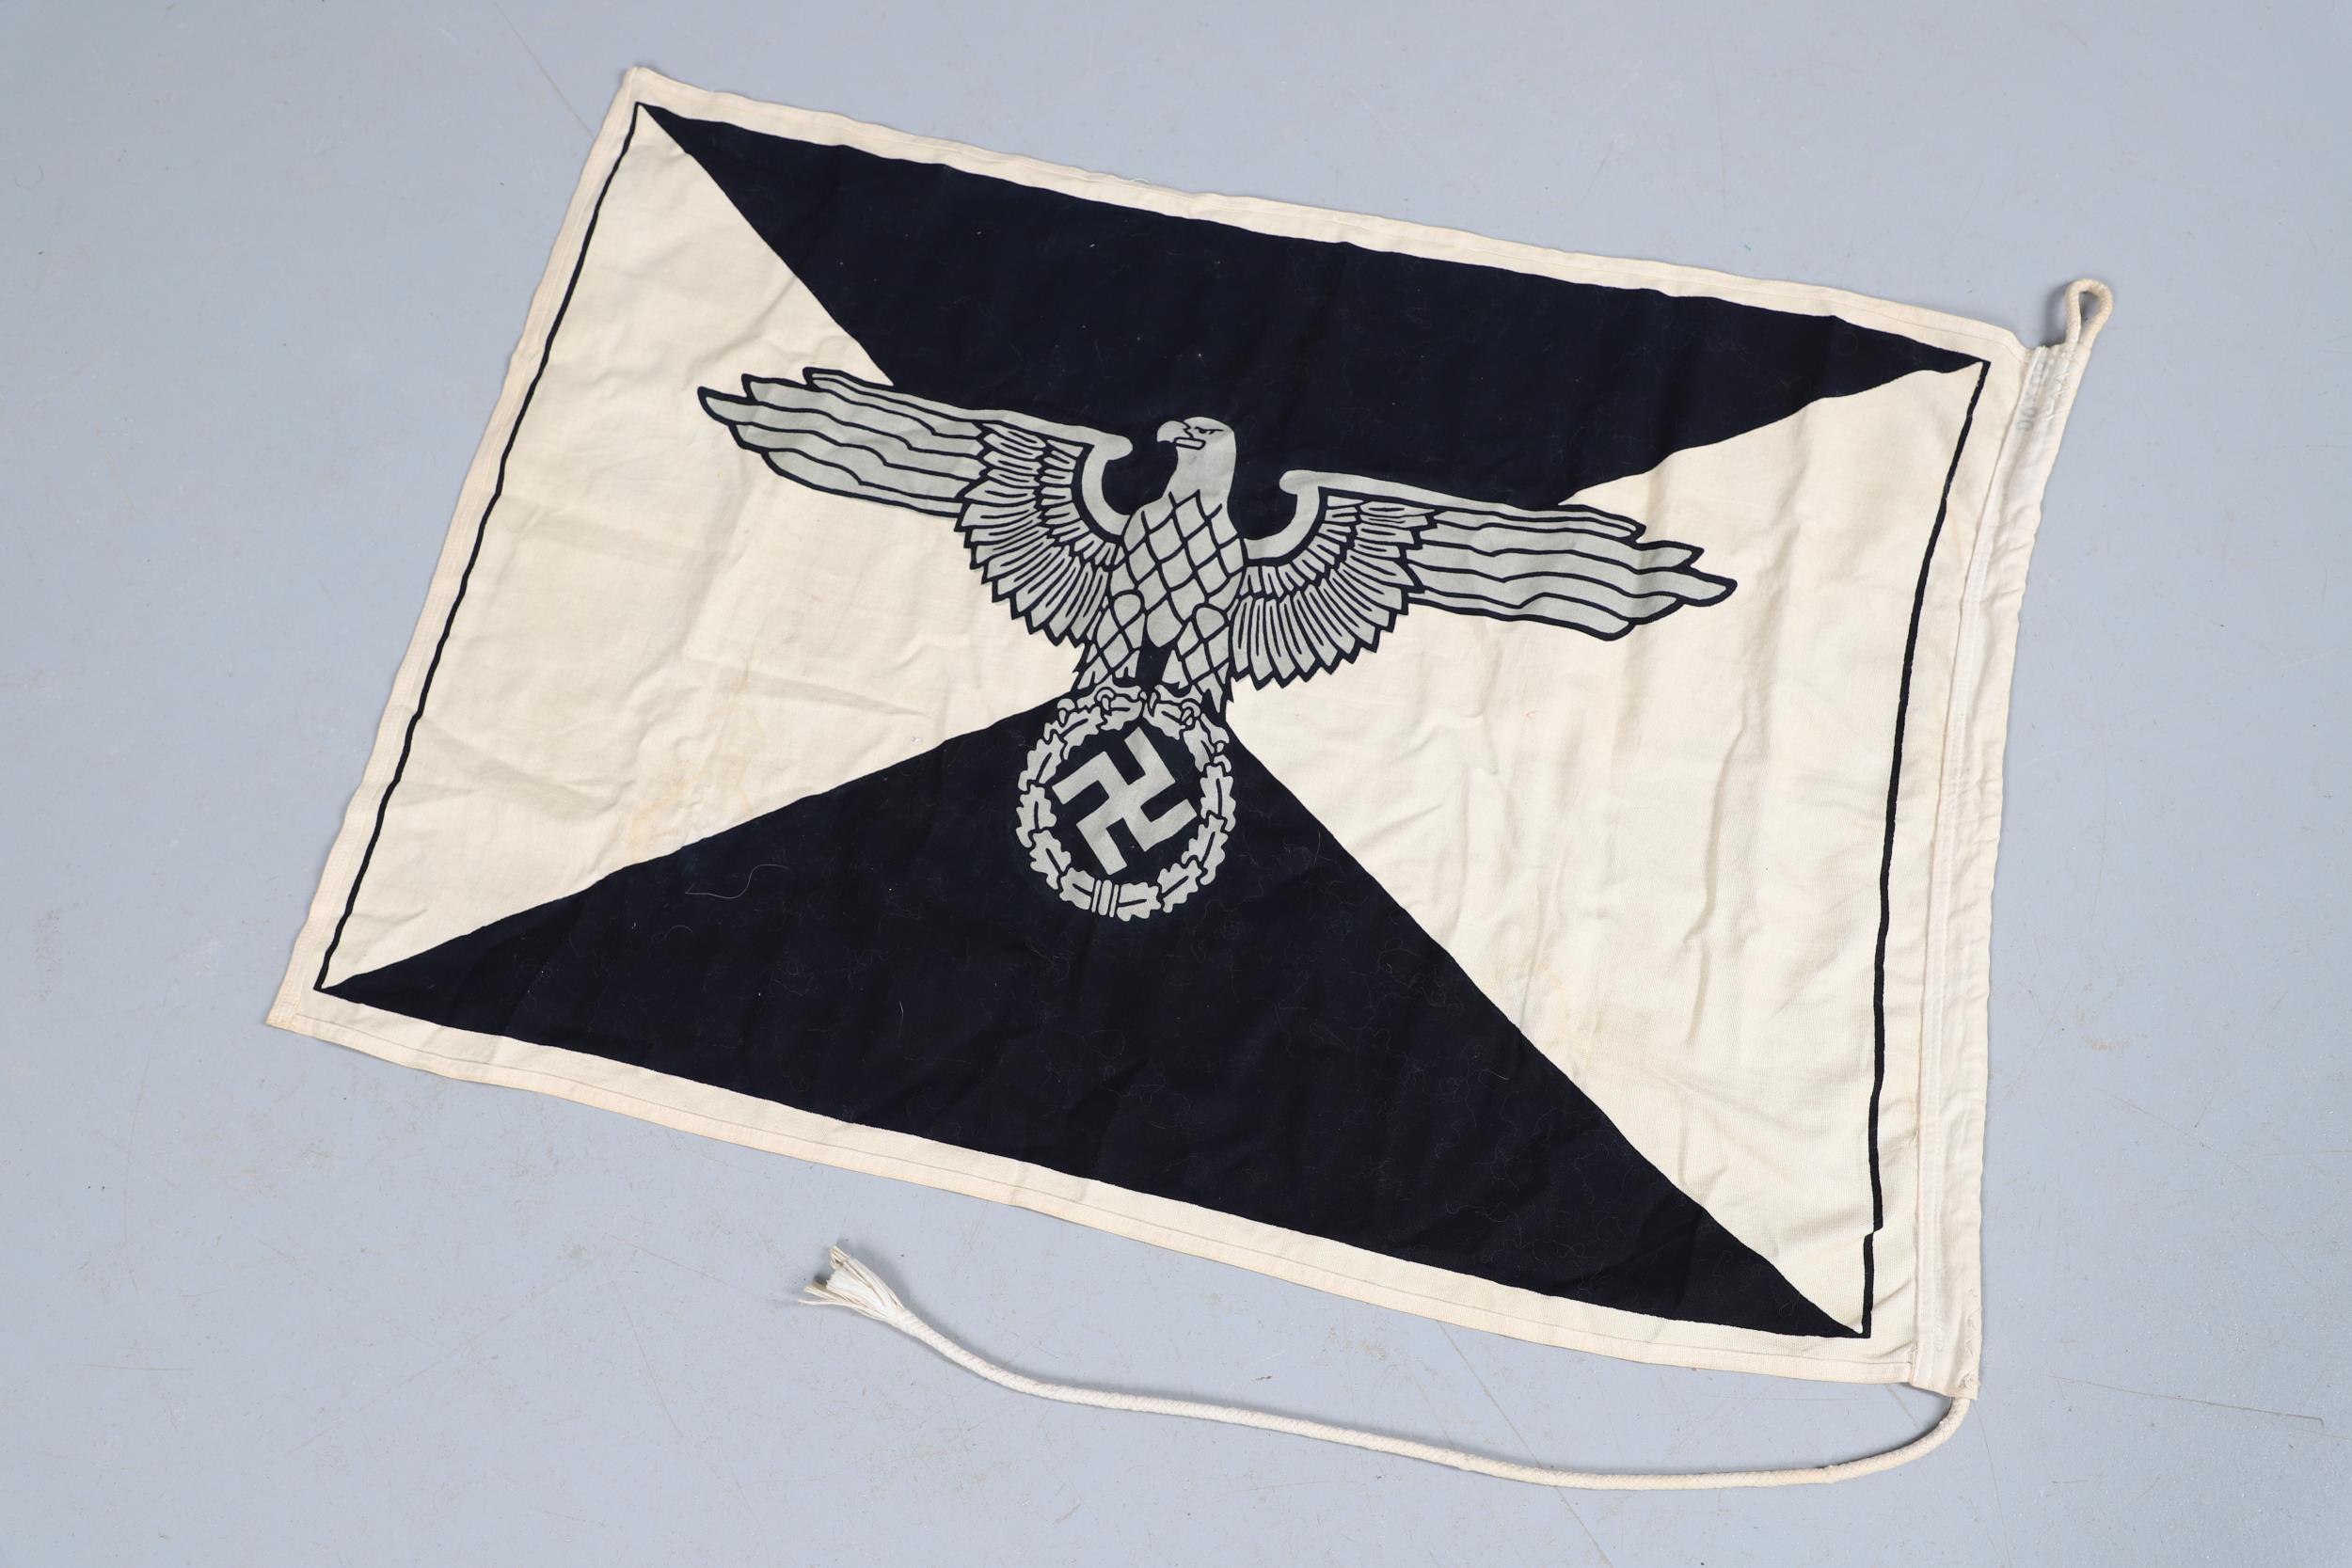 A SECOND WORLD WAR GERMAN WAFFEN SS BARRACK FLAG. - Image 6 of 6